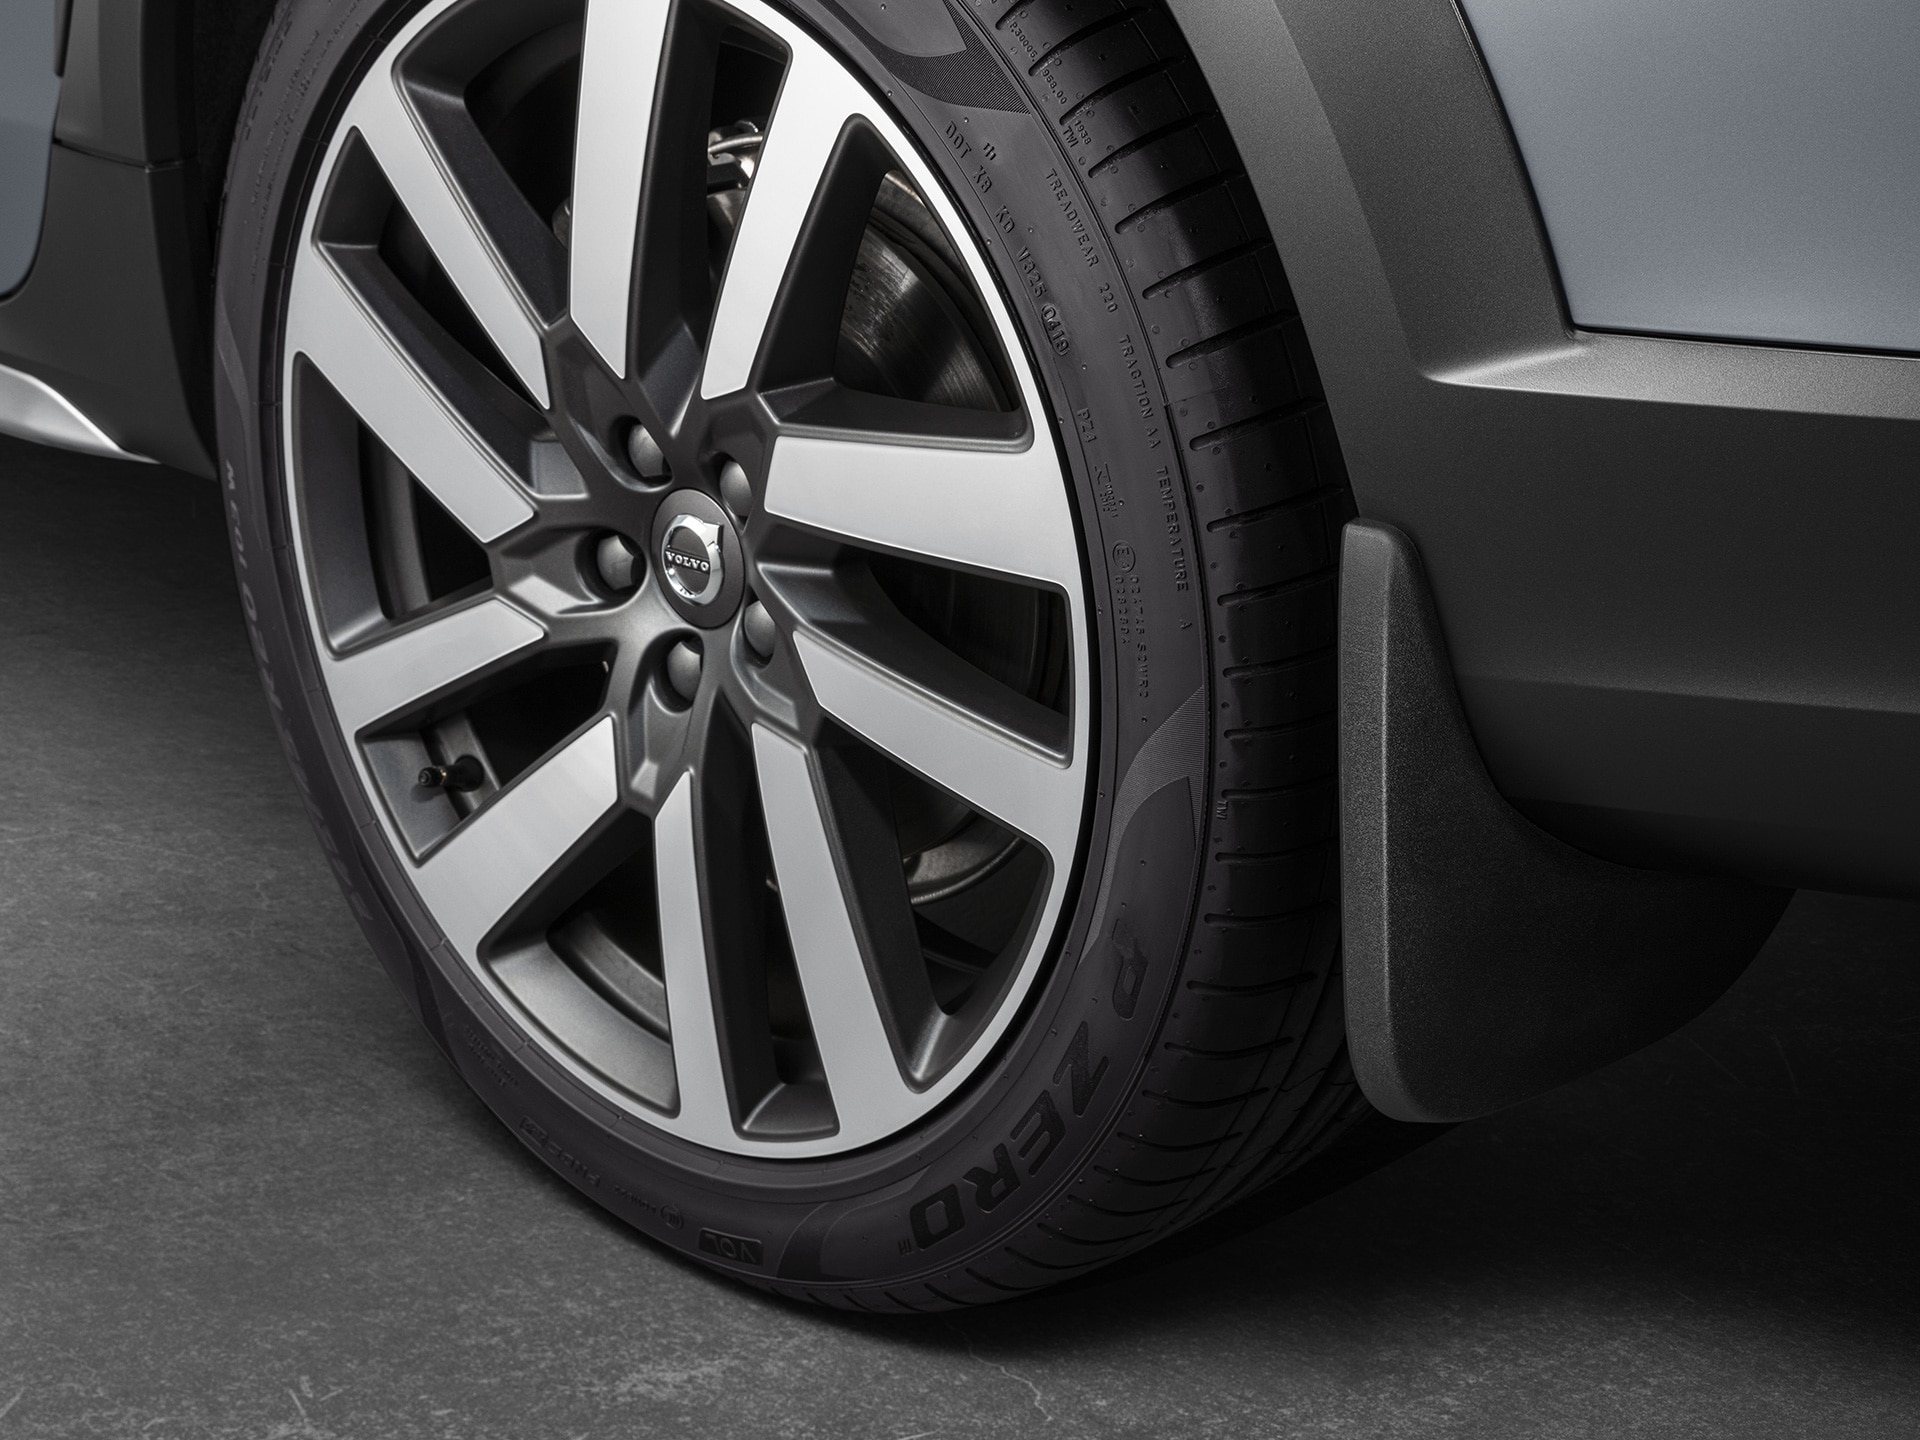 Estabilidad y agarre adicionales con ruedas grandes en el Volvo V90 Cross Country.